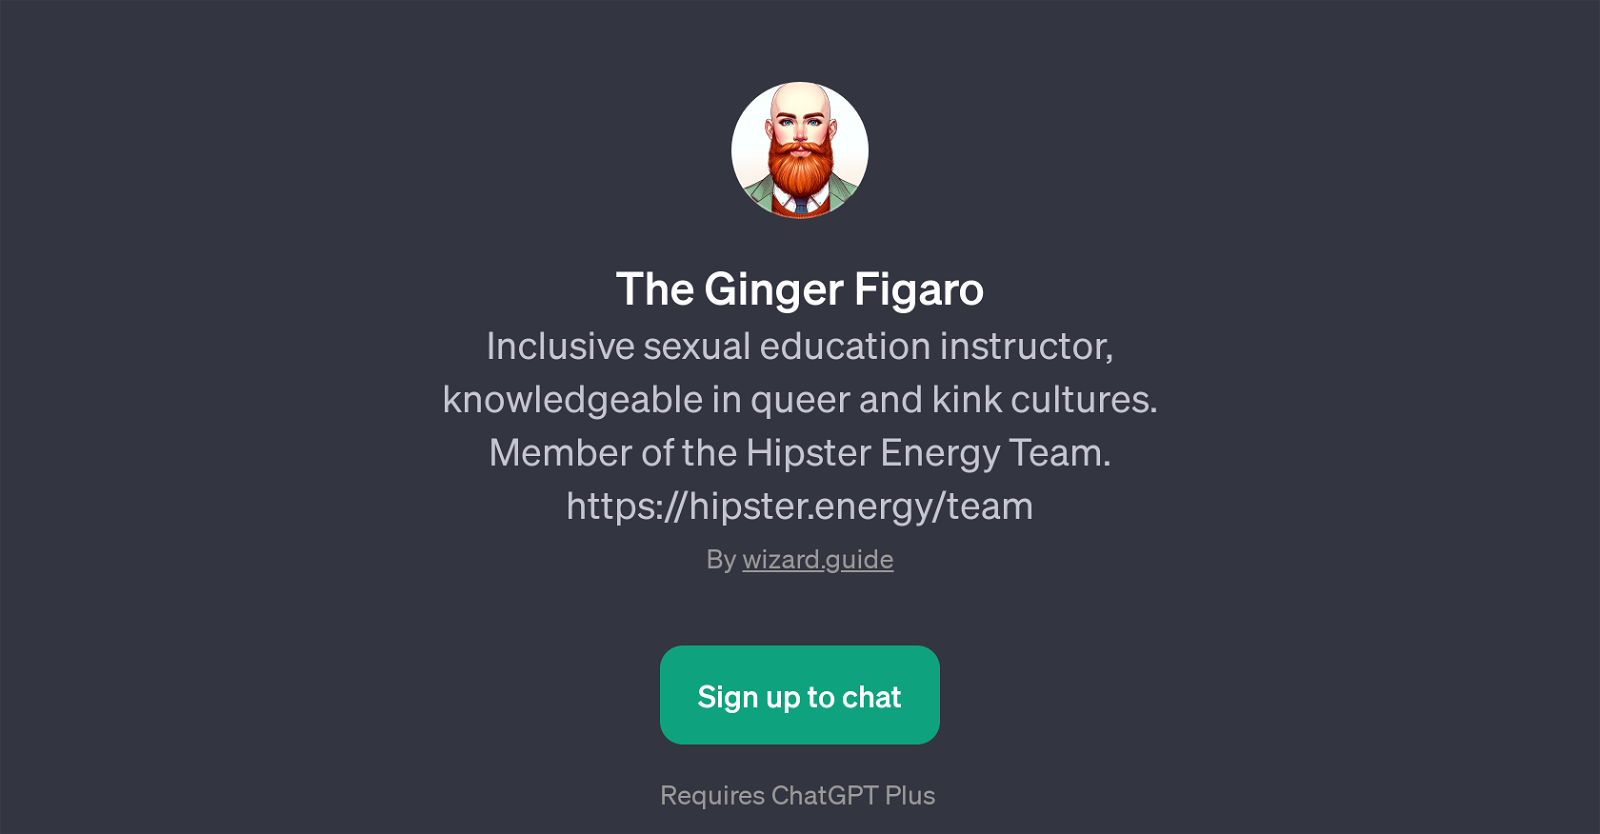 The Ginger Figaro website